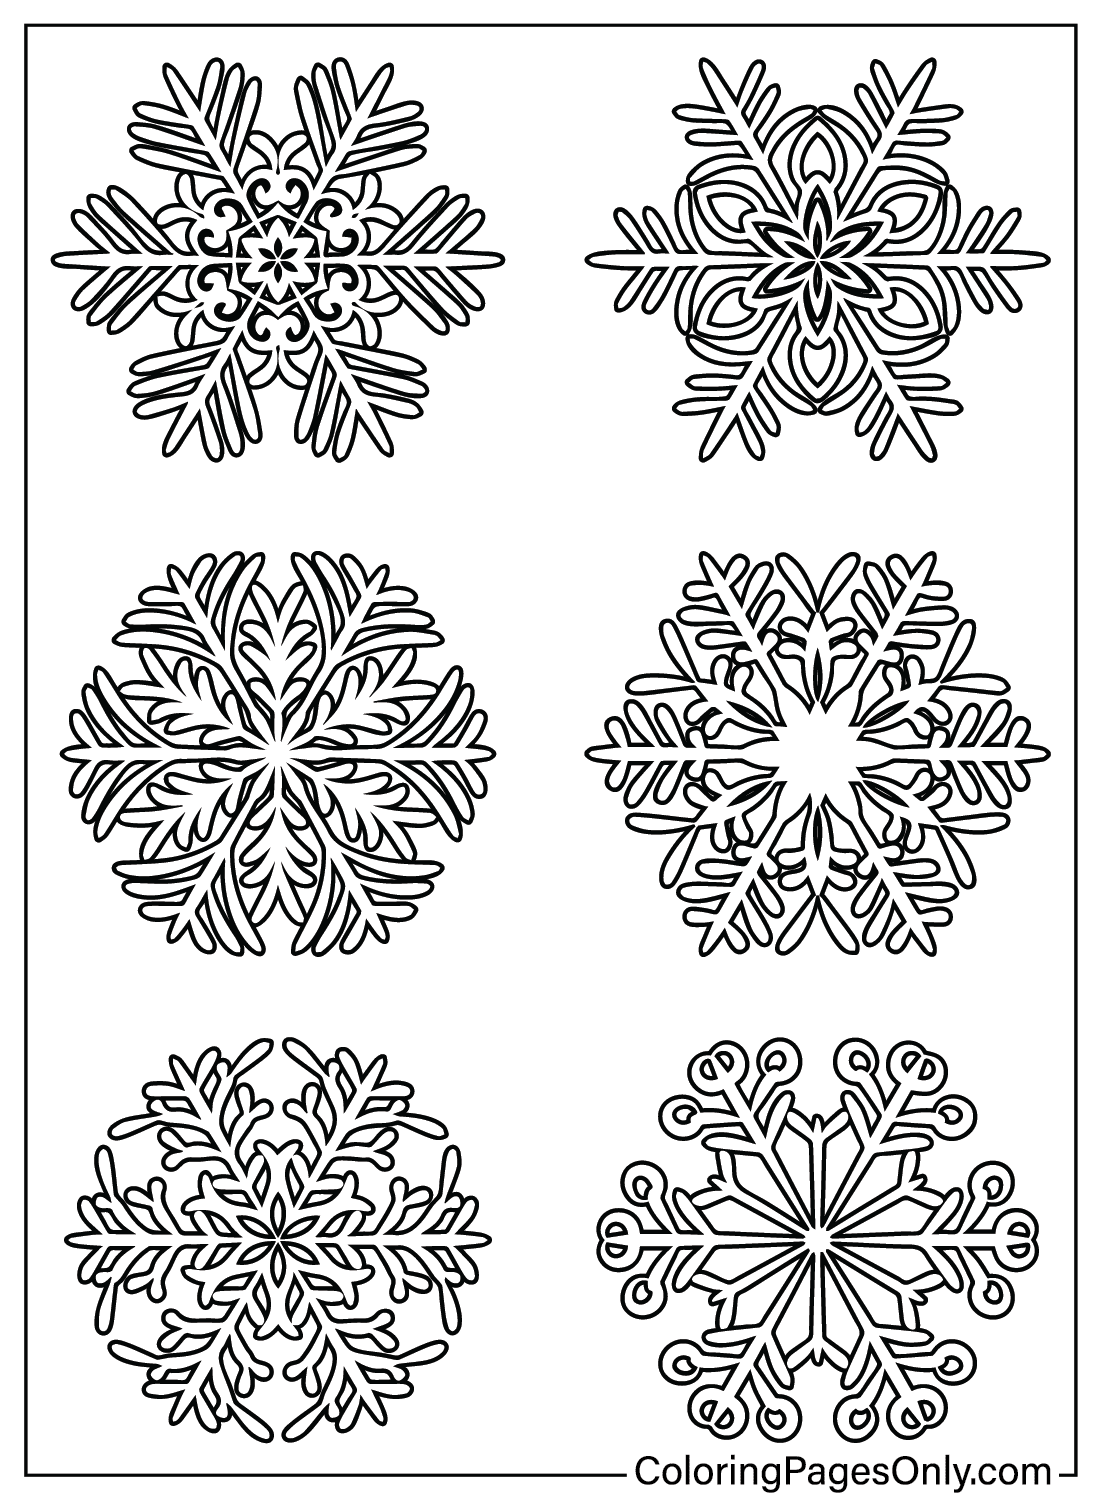 Kleurplaten van Sneeuwvlokken van Sneeuwvlok